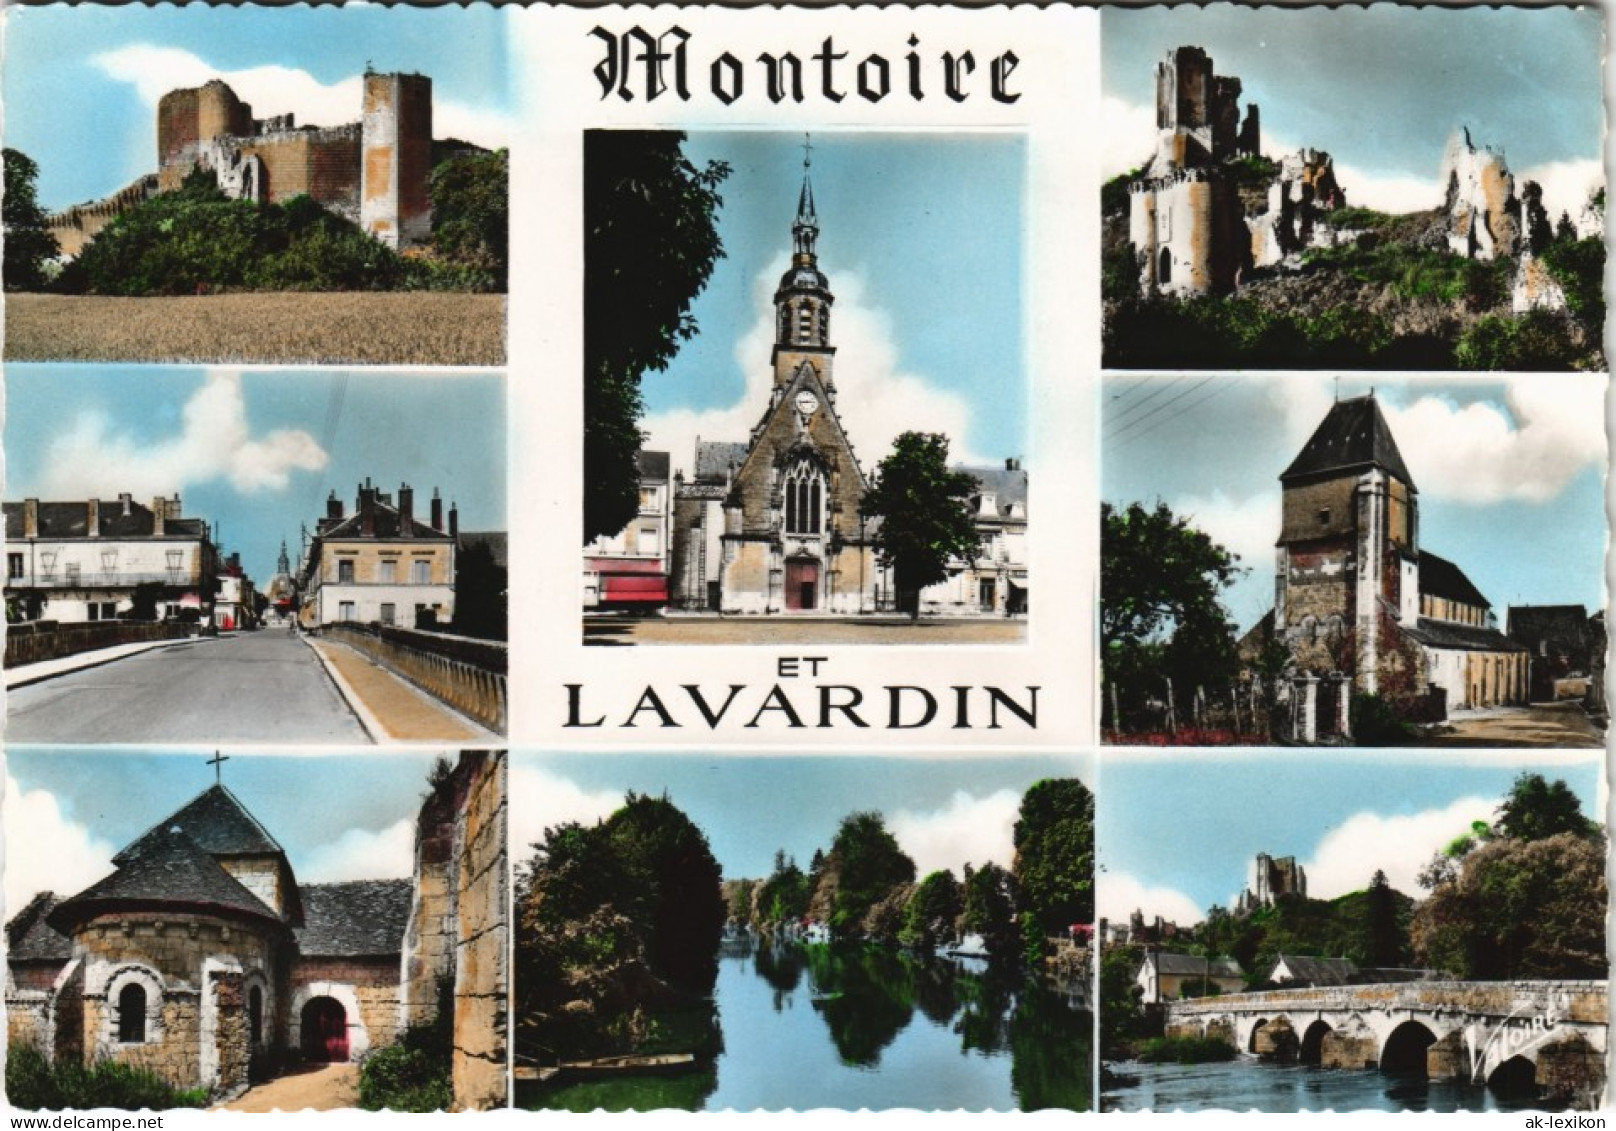 .Frankreich LA VALLEE DU LOIR MONTOIRE-SUR-LE   LAVARDIN (Loir-et-Cher) 1960 - Autres & Non Classés